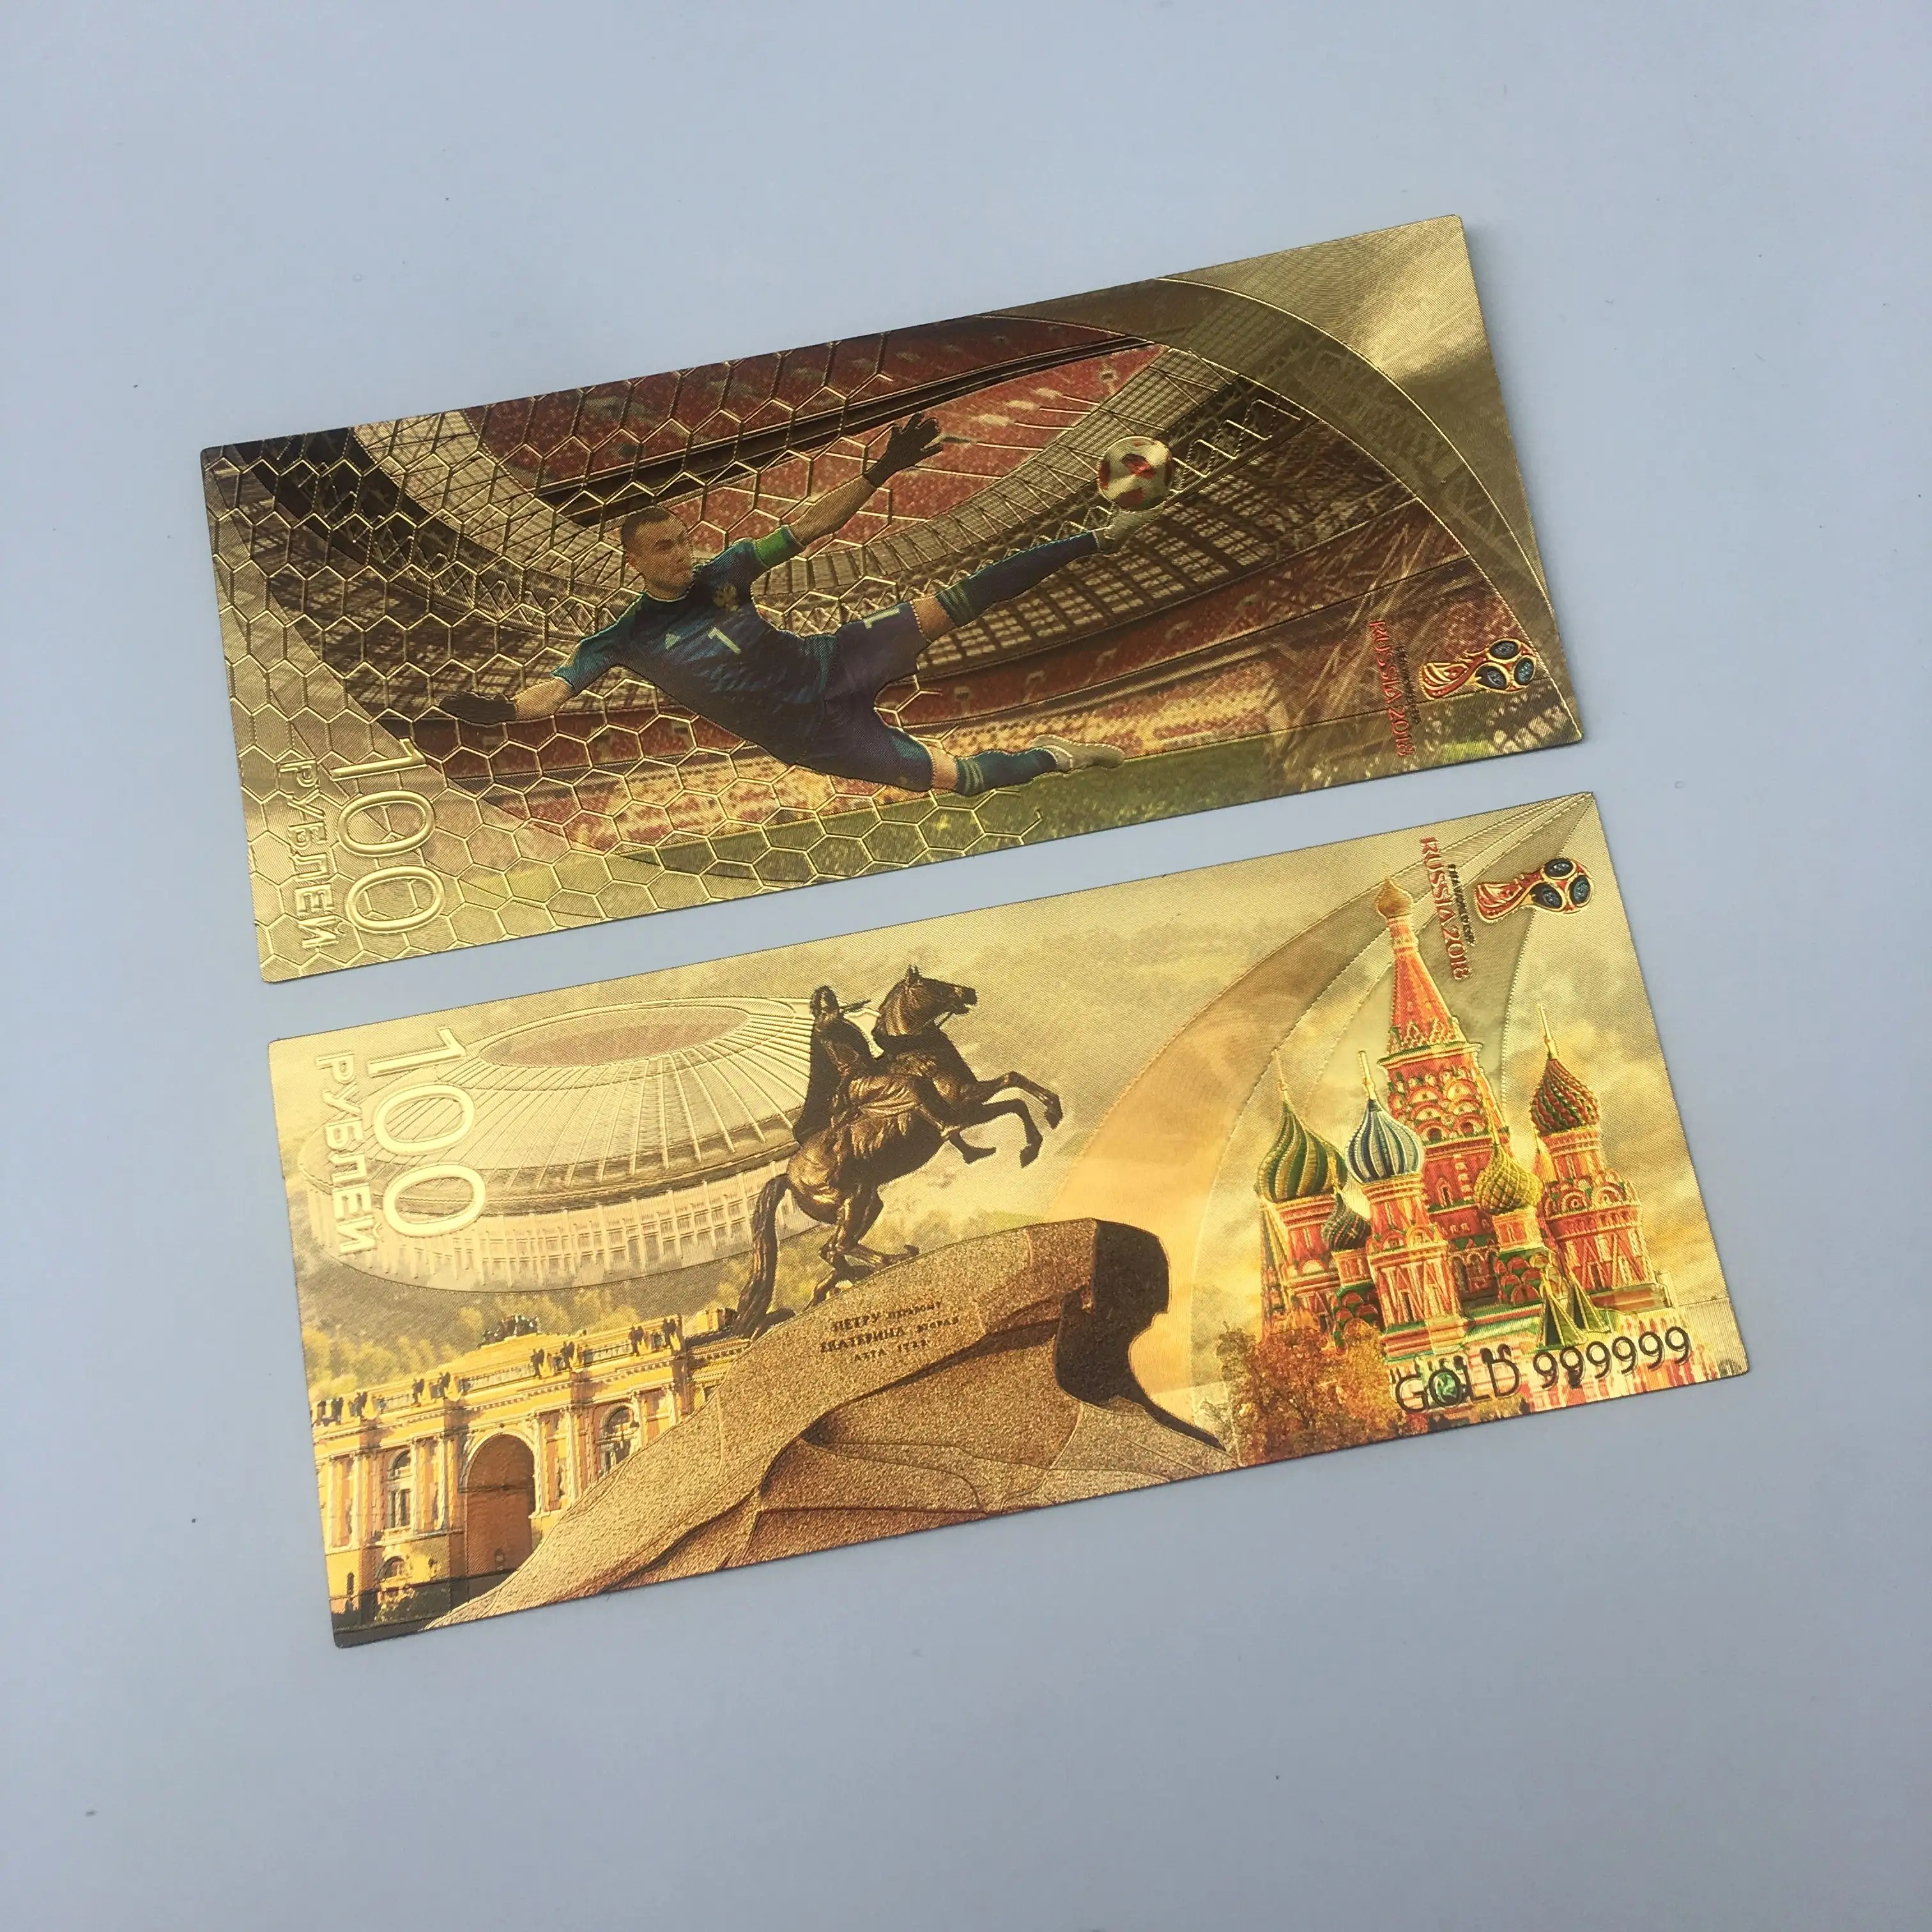 Пластиковые сувенирные футбольные банкноты 100 рублей для коллекционирования, Россия